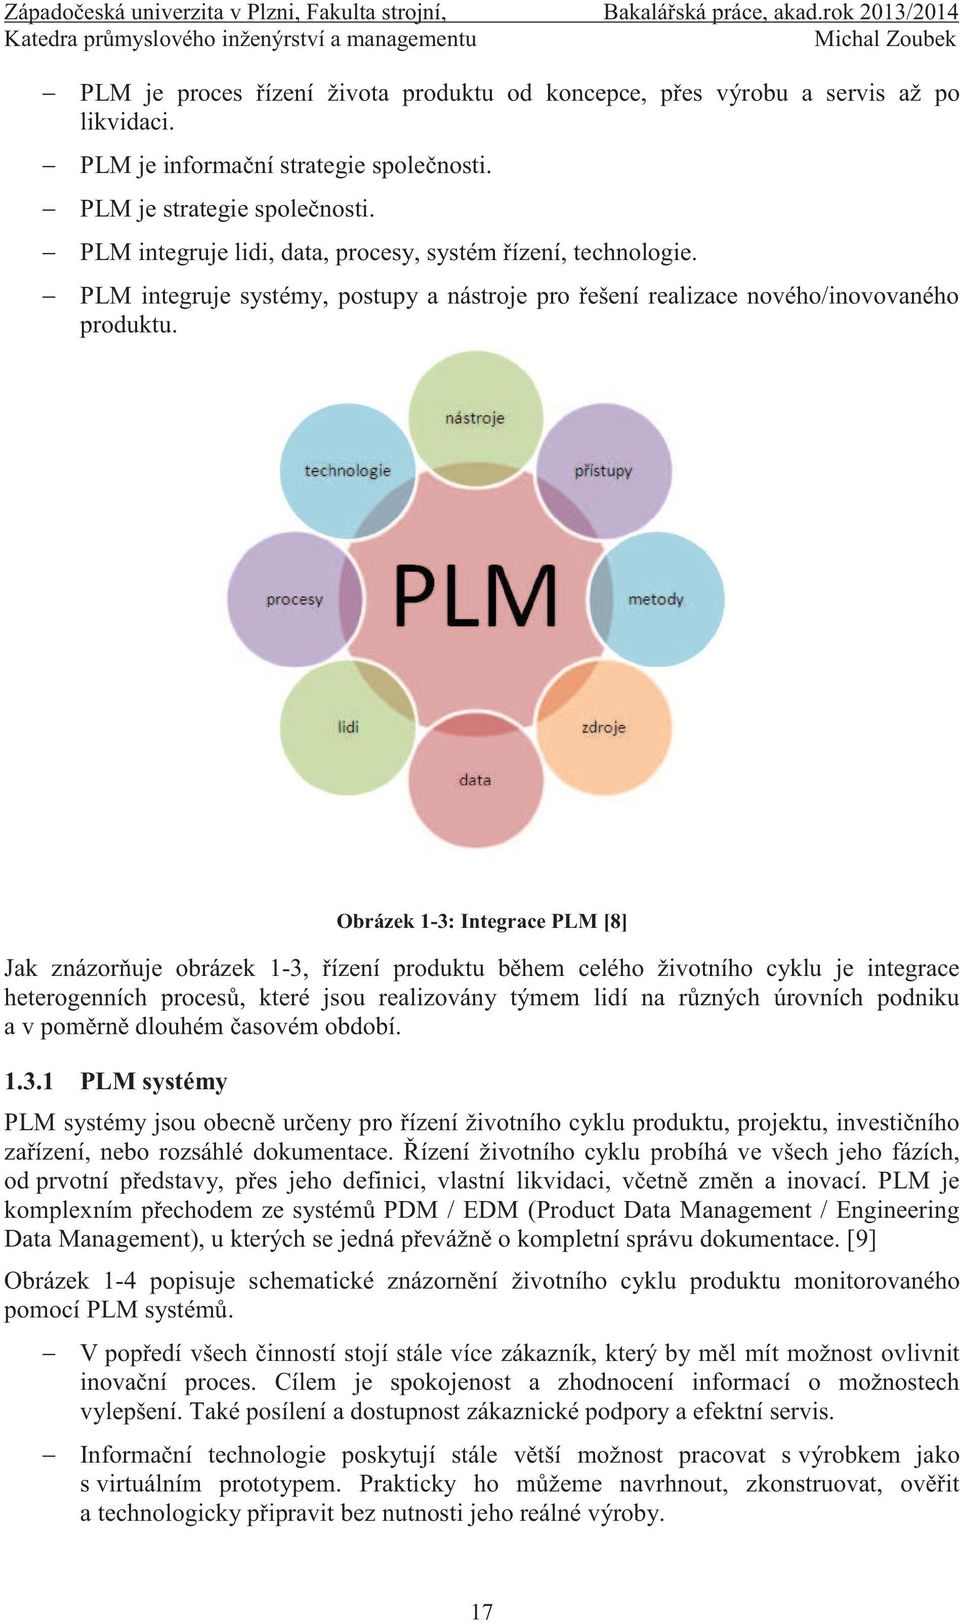 Obrázek 1-3: Integrace PLM [8] Jak znázorňuje obrázek 1-3, řízení produktu během celého životního cyklu je integrace heterogenních procesů, které jsou realizovány týmem lidí na různých úrovních